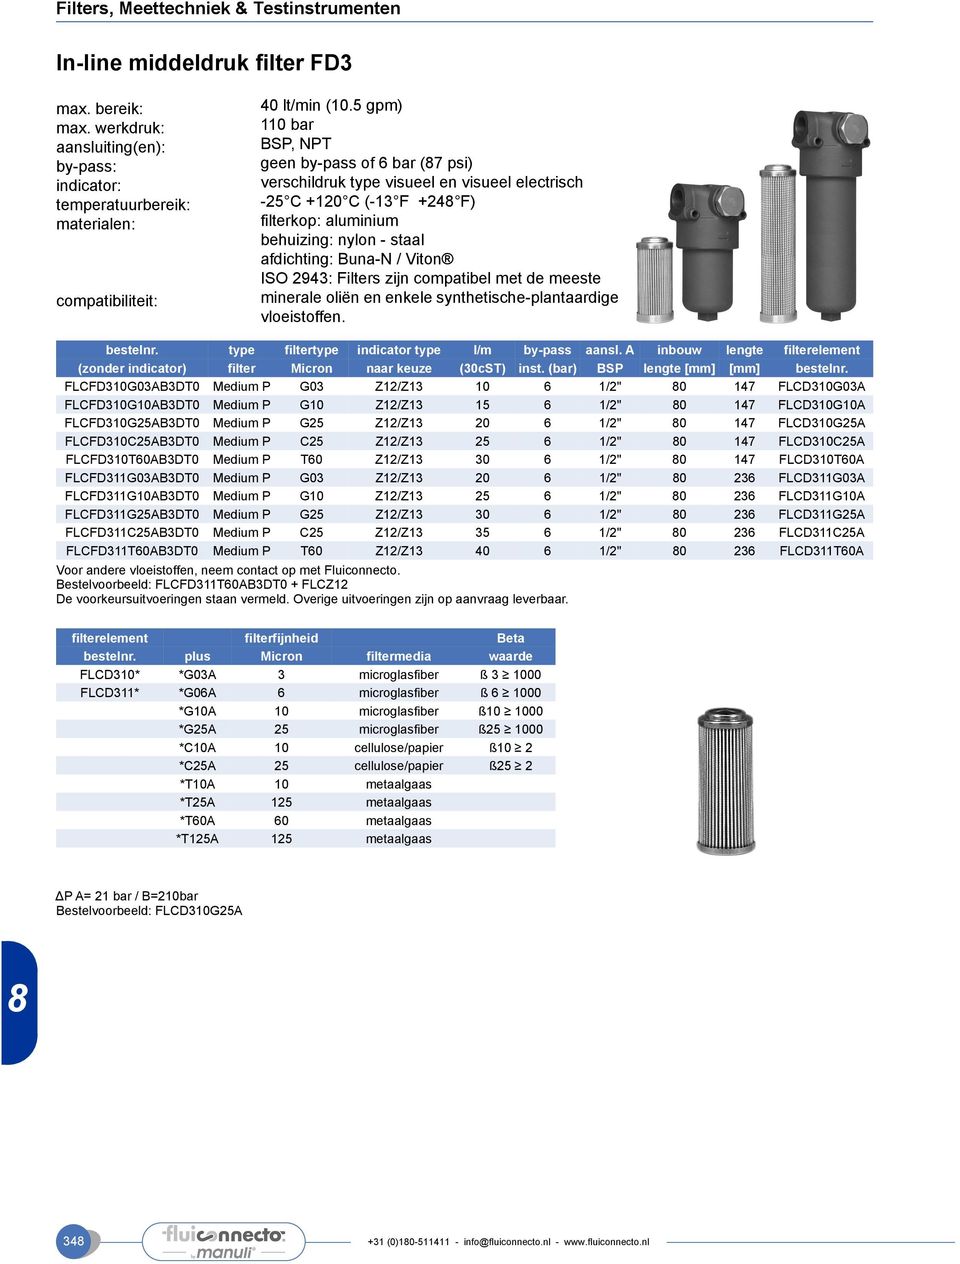 Viton ISO 2943: Filters zijn compatibel met de meeste minerale oliën en enkele synthetische-plantaardige vloeistoffen. bestelnr. type filtertype indicator type l/m by-pass aansl.